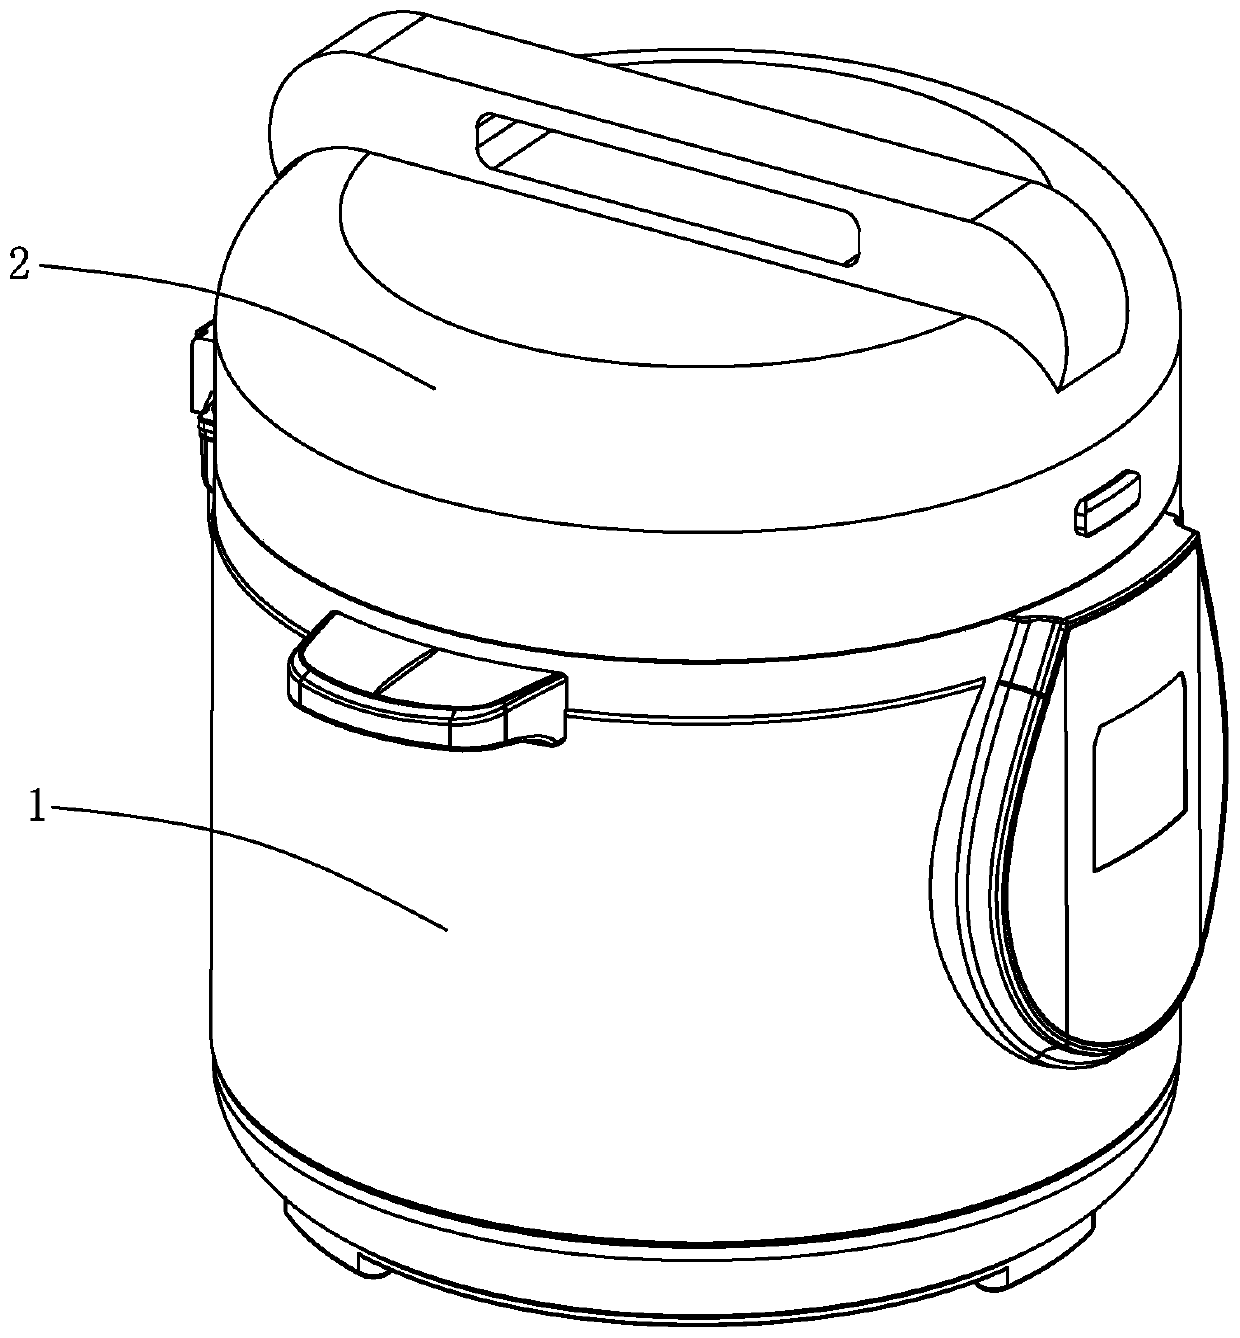 Pressure control device of micro-pressure electric cooker and micro-pressure electric cooker